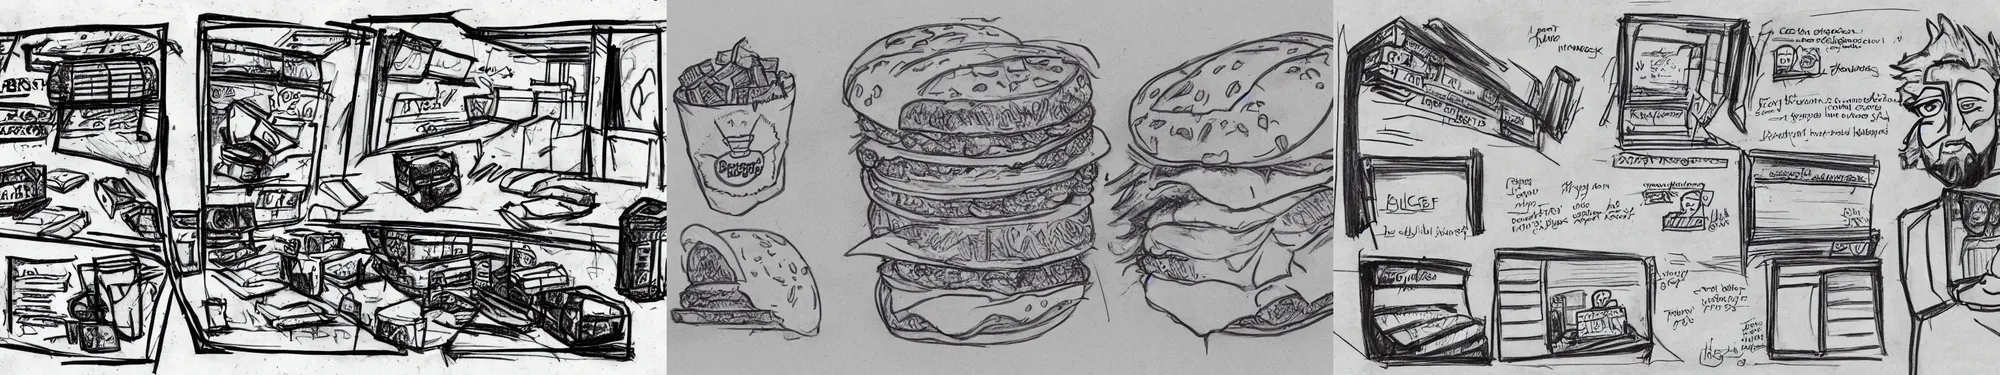 Prompt: sketch, first draft, secret file, plans of a burger king heist